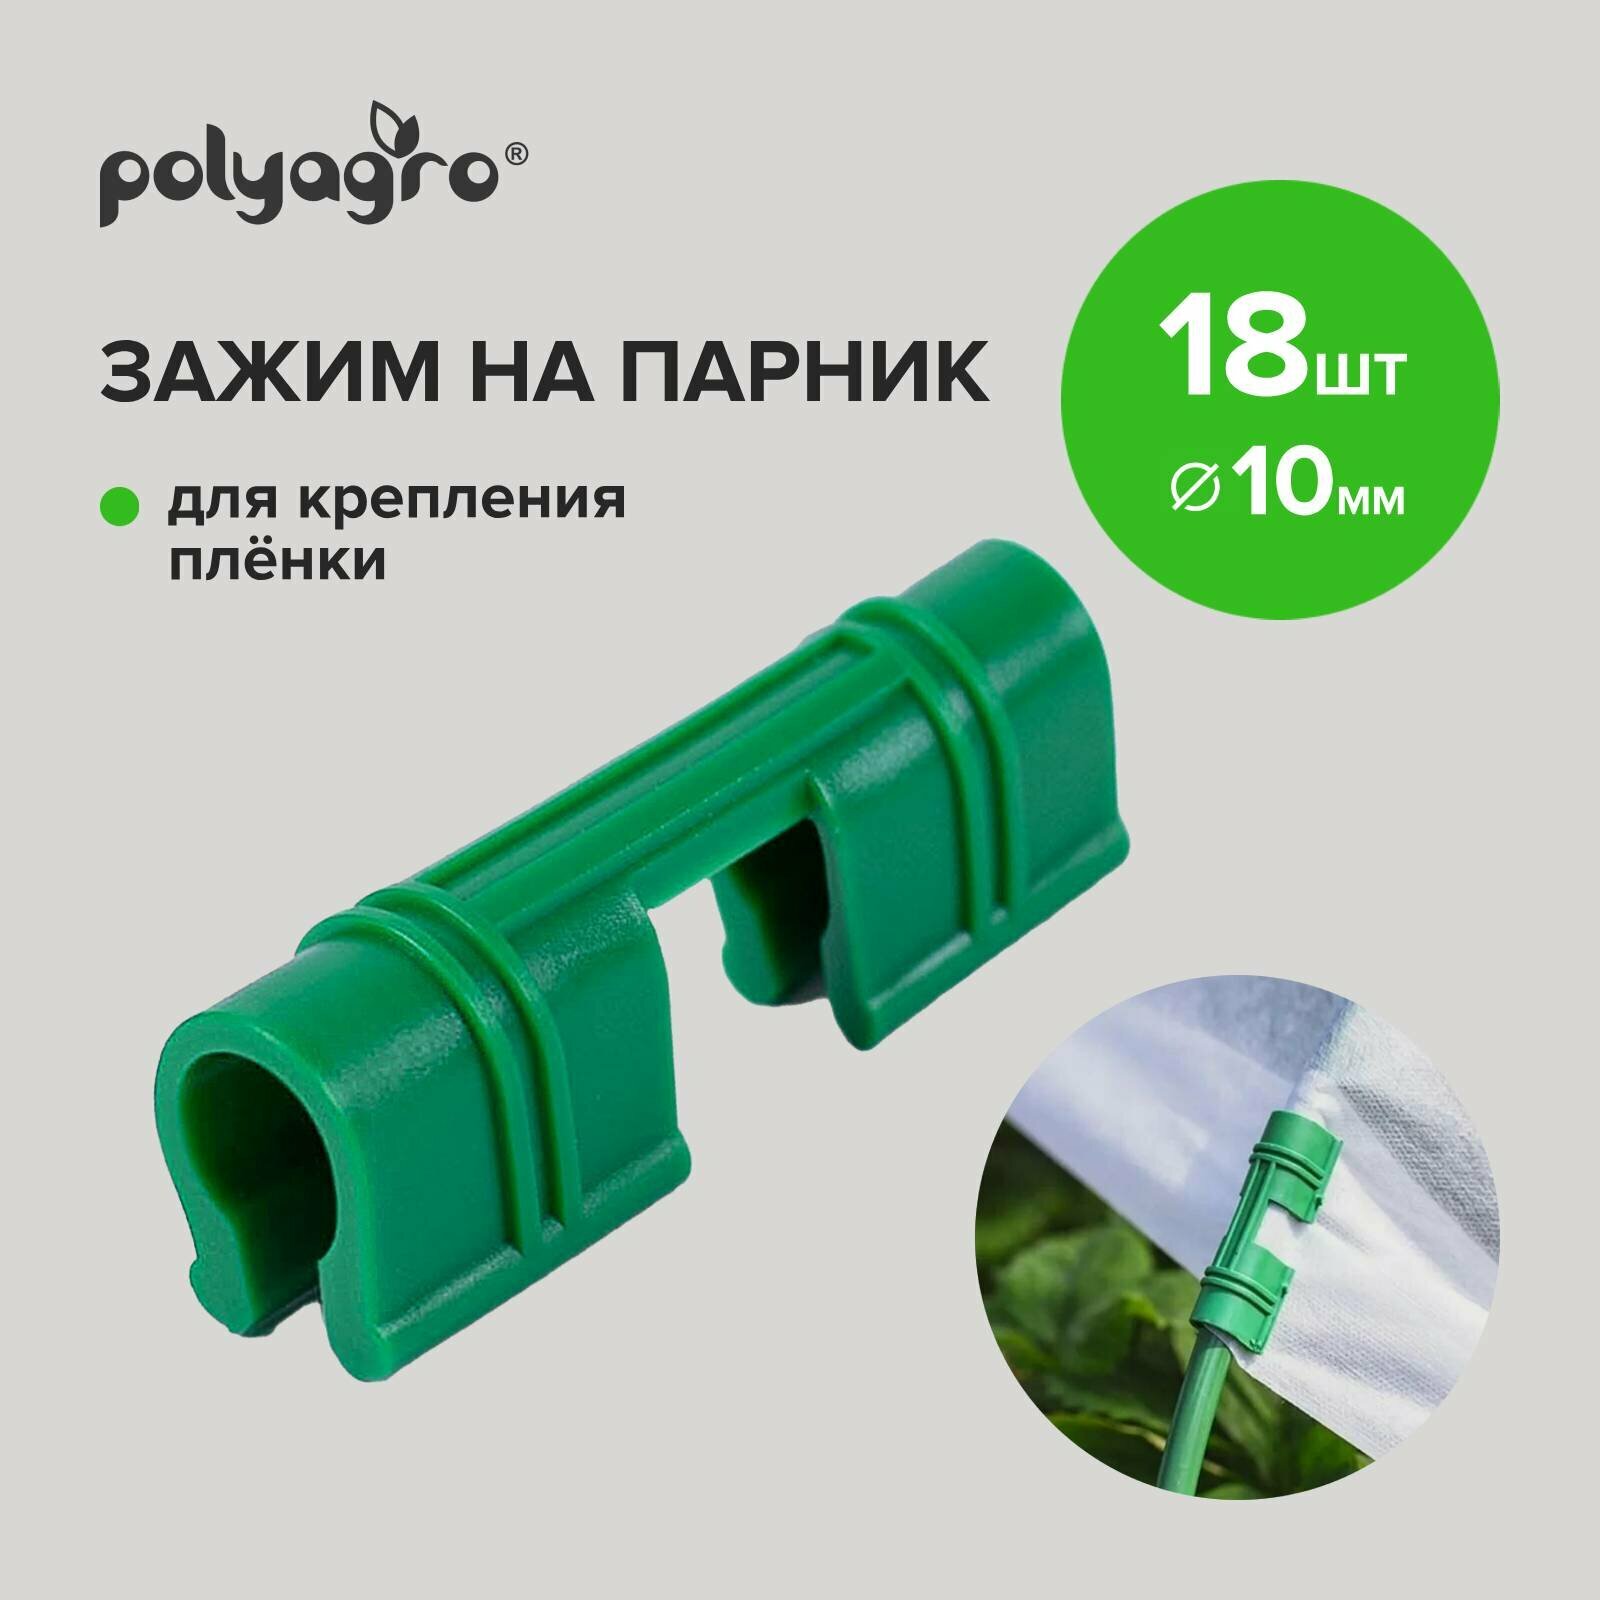 Зажимы для пленки Polyagro 10 мм (18шт.)